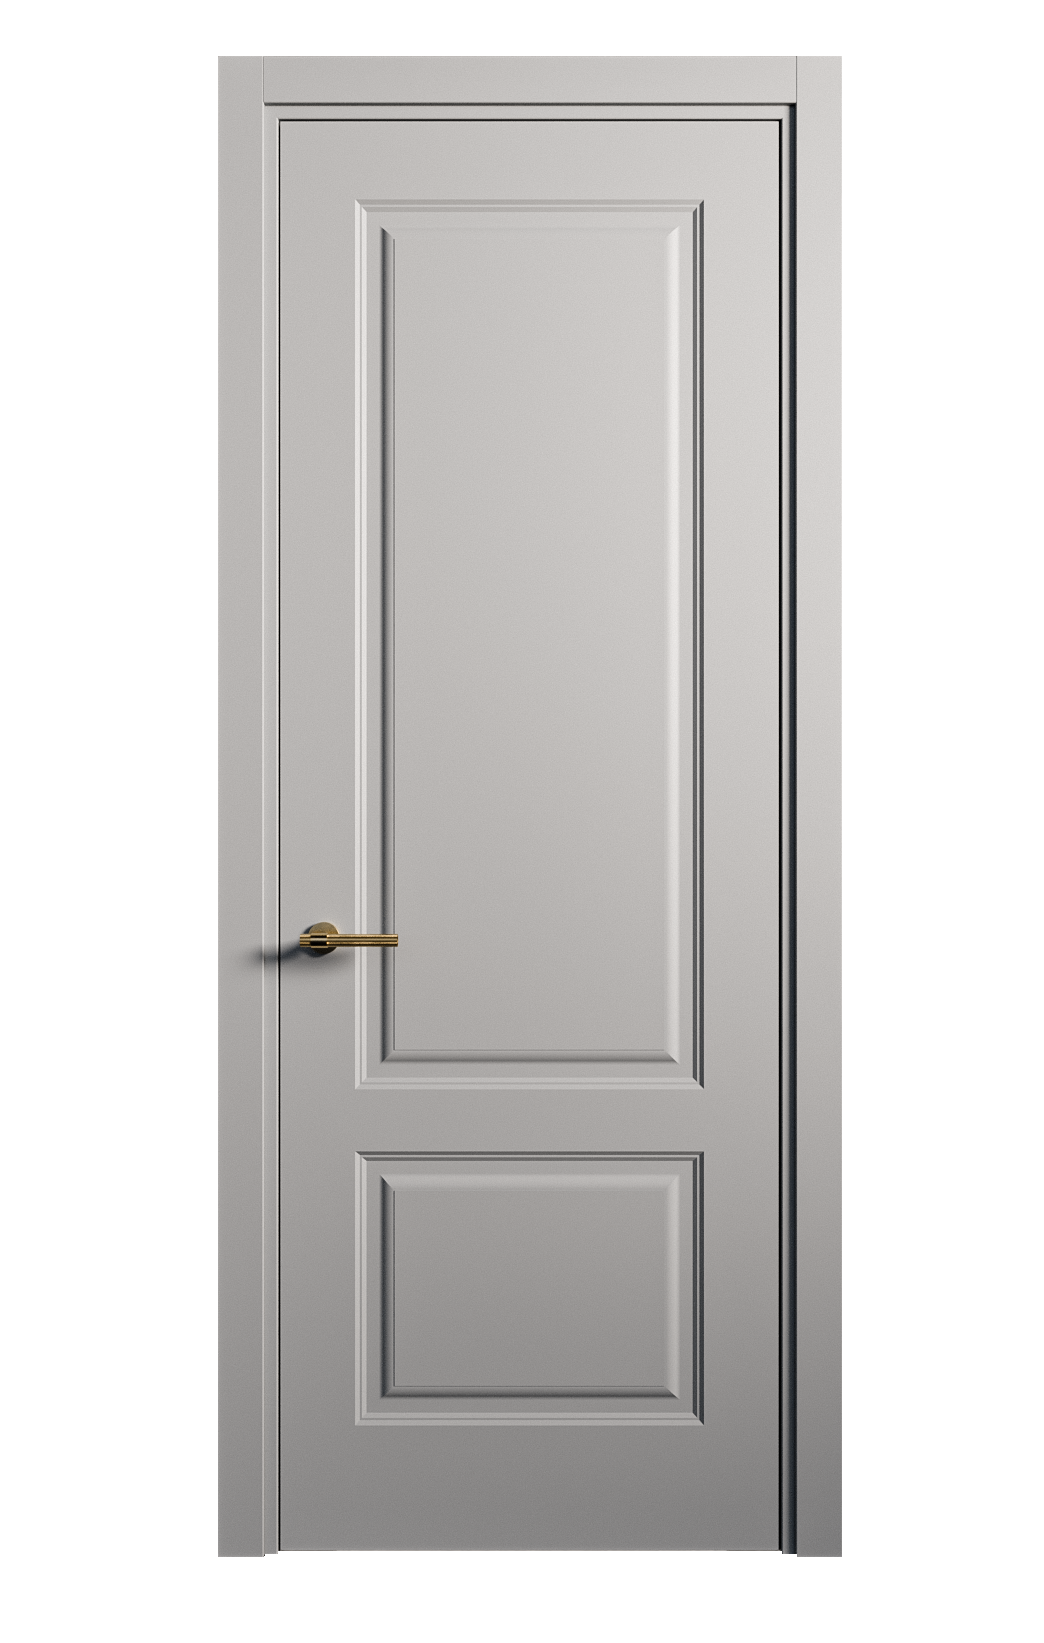 Межкомнатная дверь Вита-1 глухая эмаль ral 7040 26304